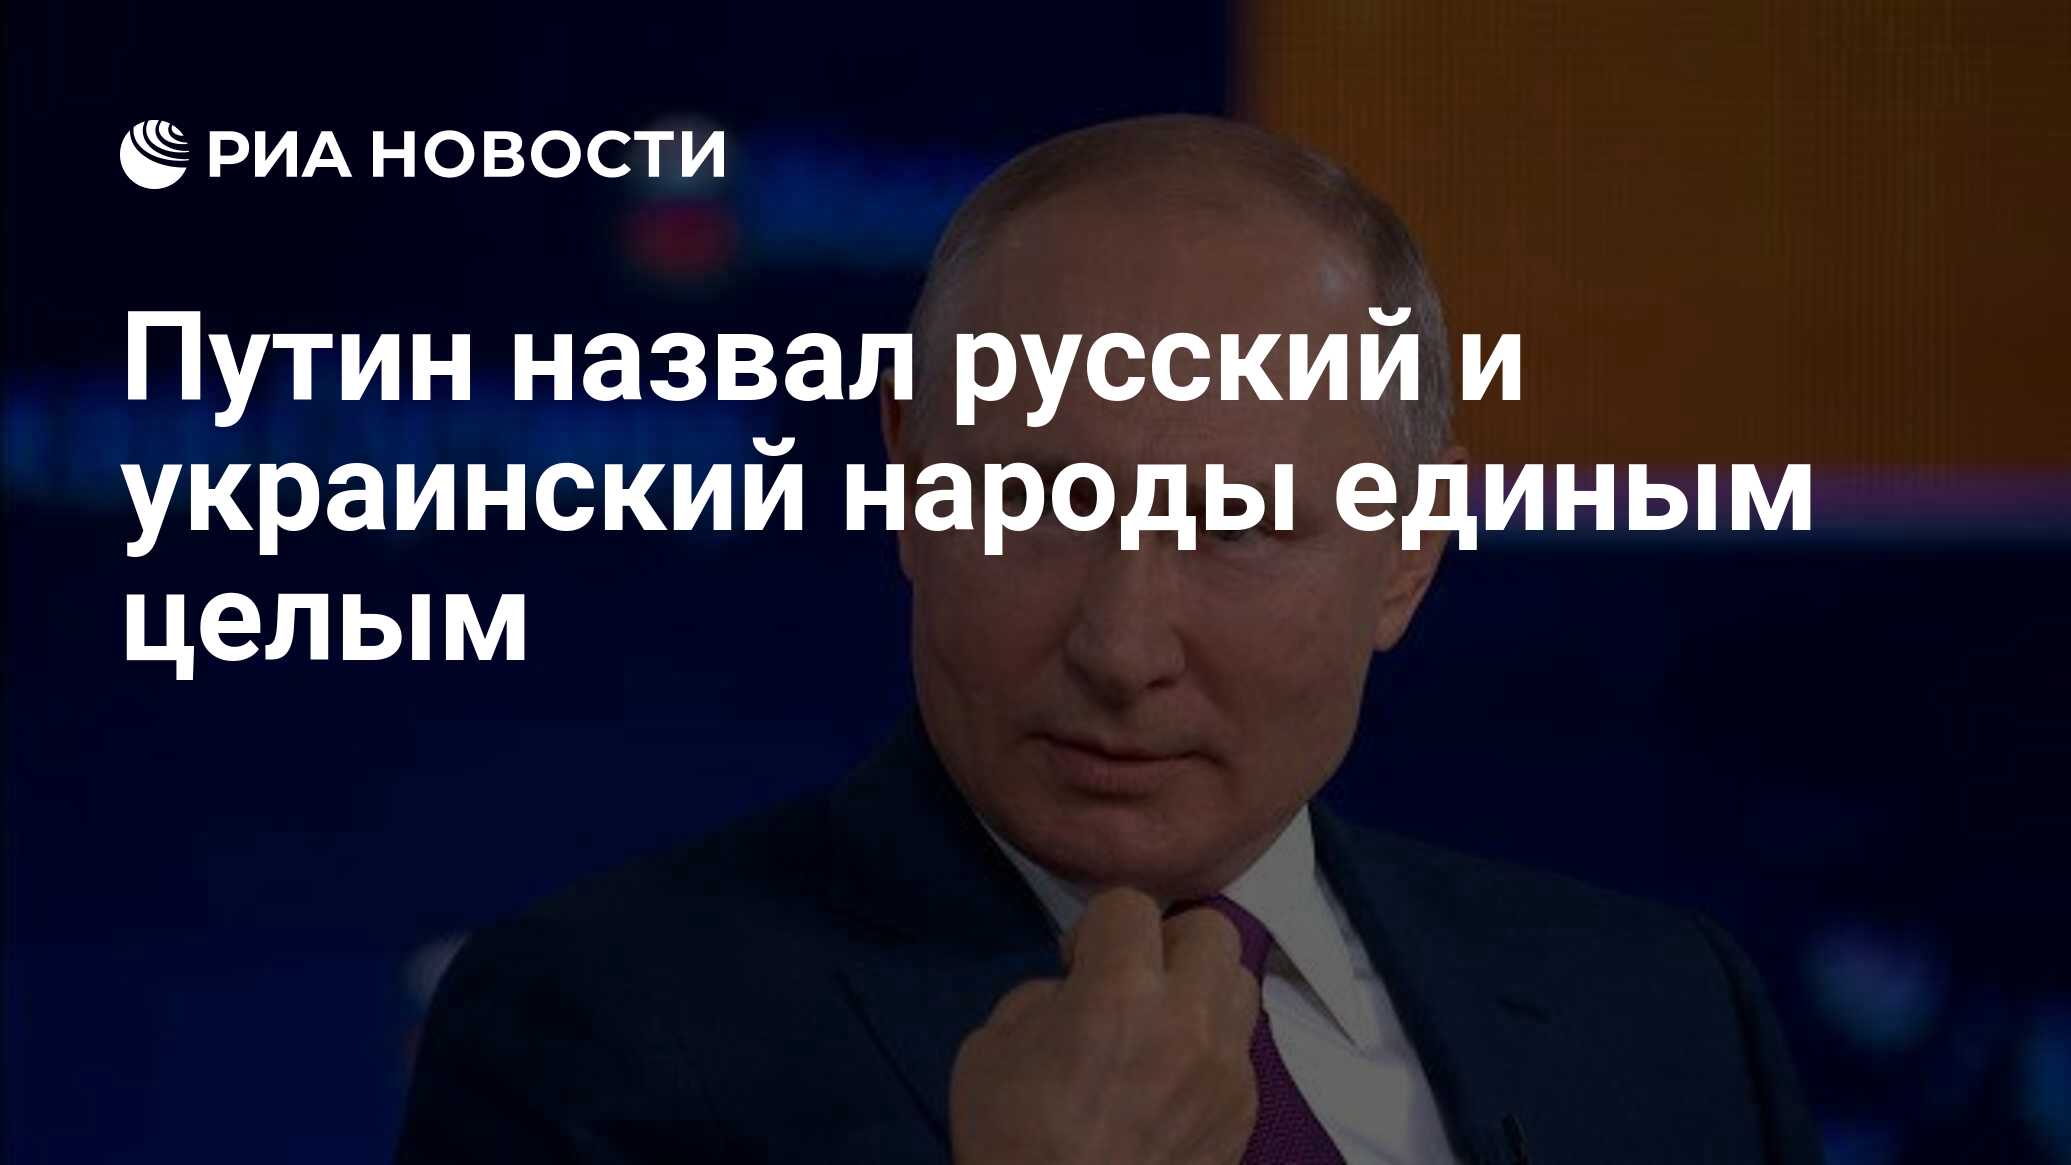 Путин назвал русский и украинский народы единым целым